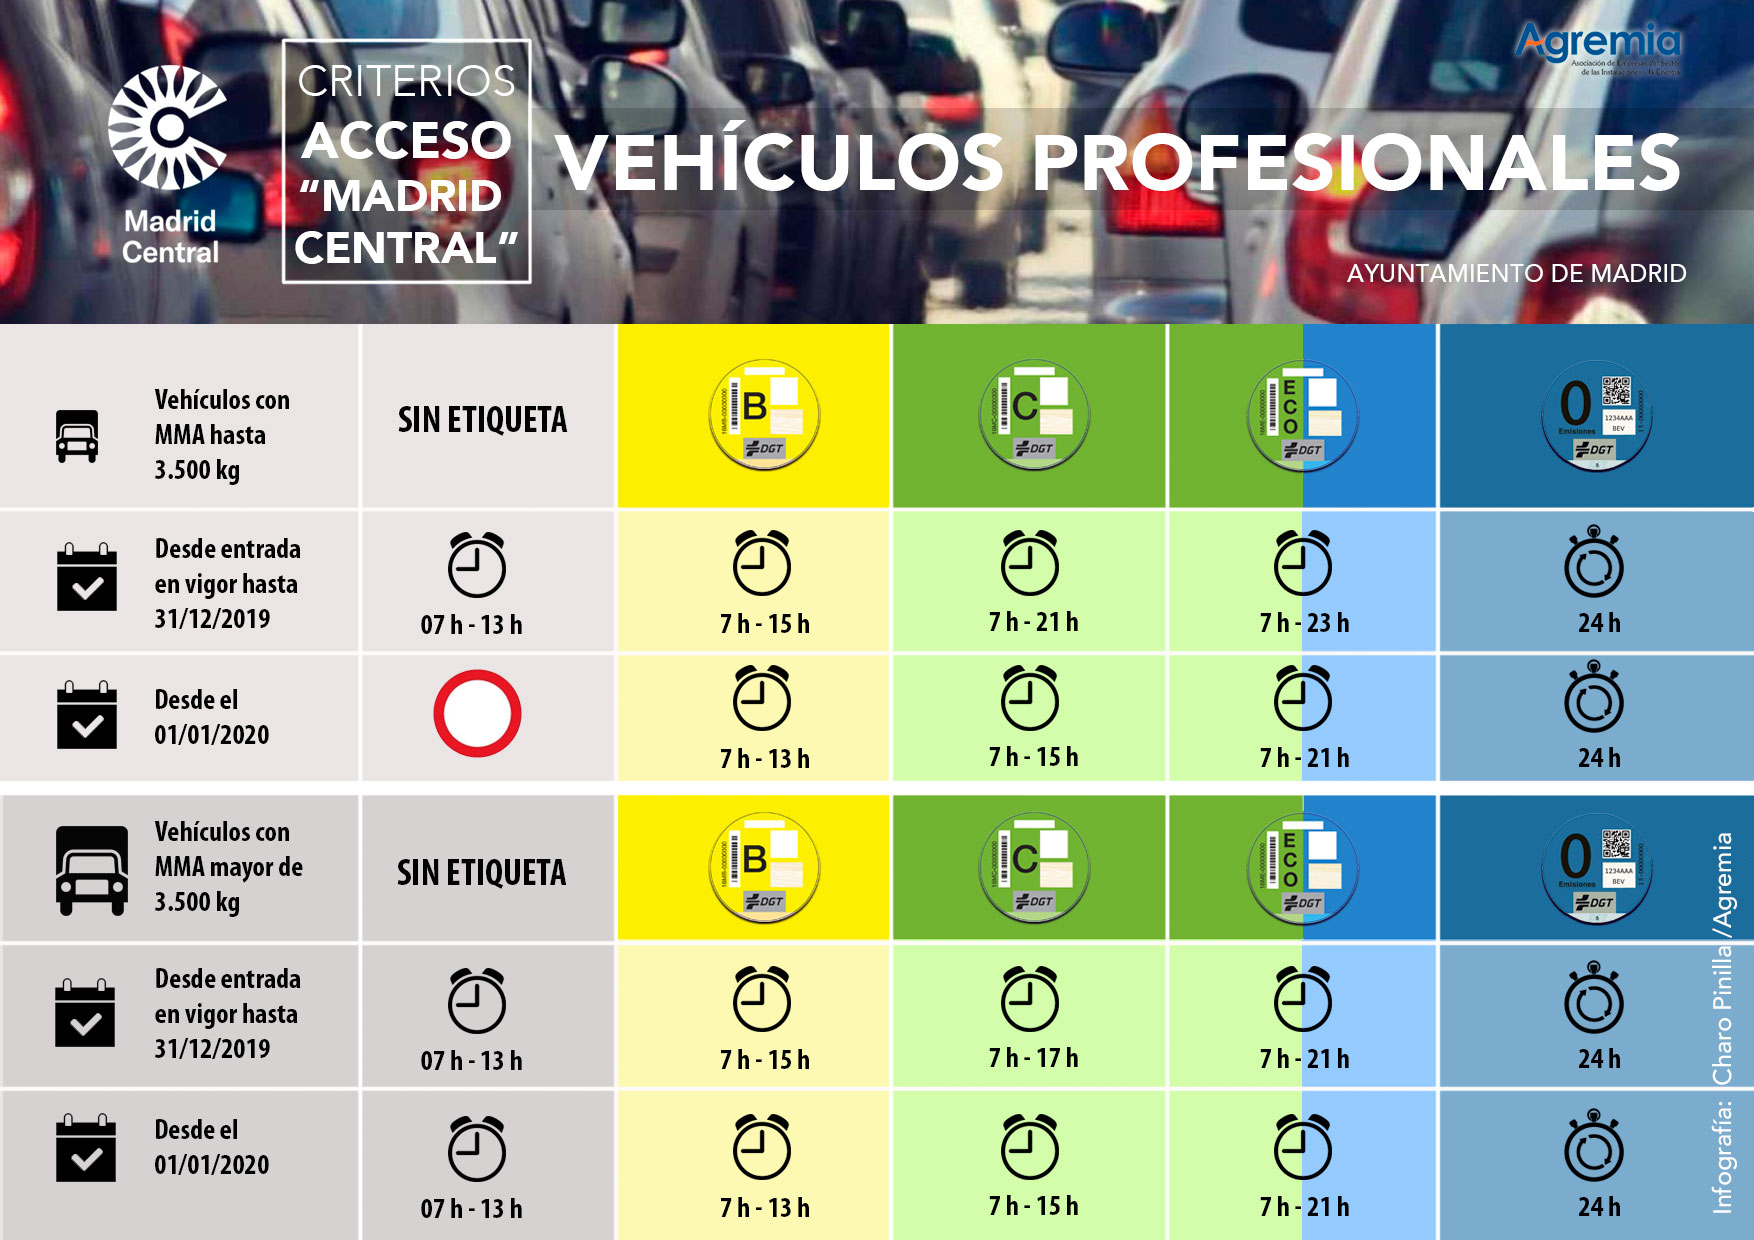 Criterios de acceso a "Madrid Central"